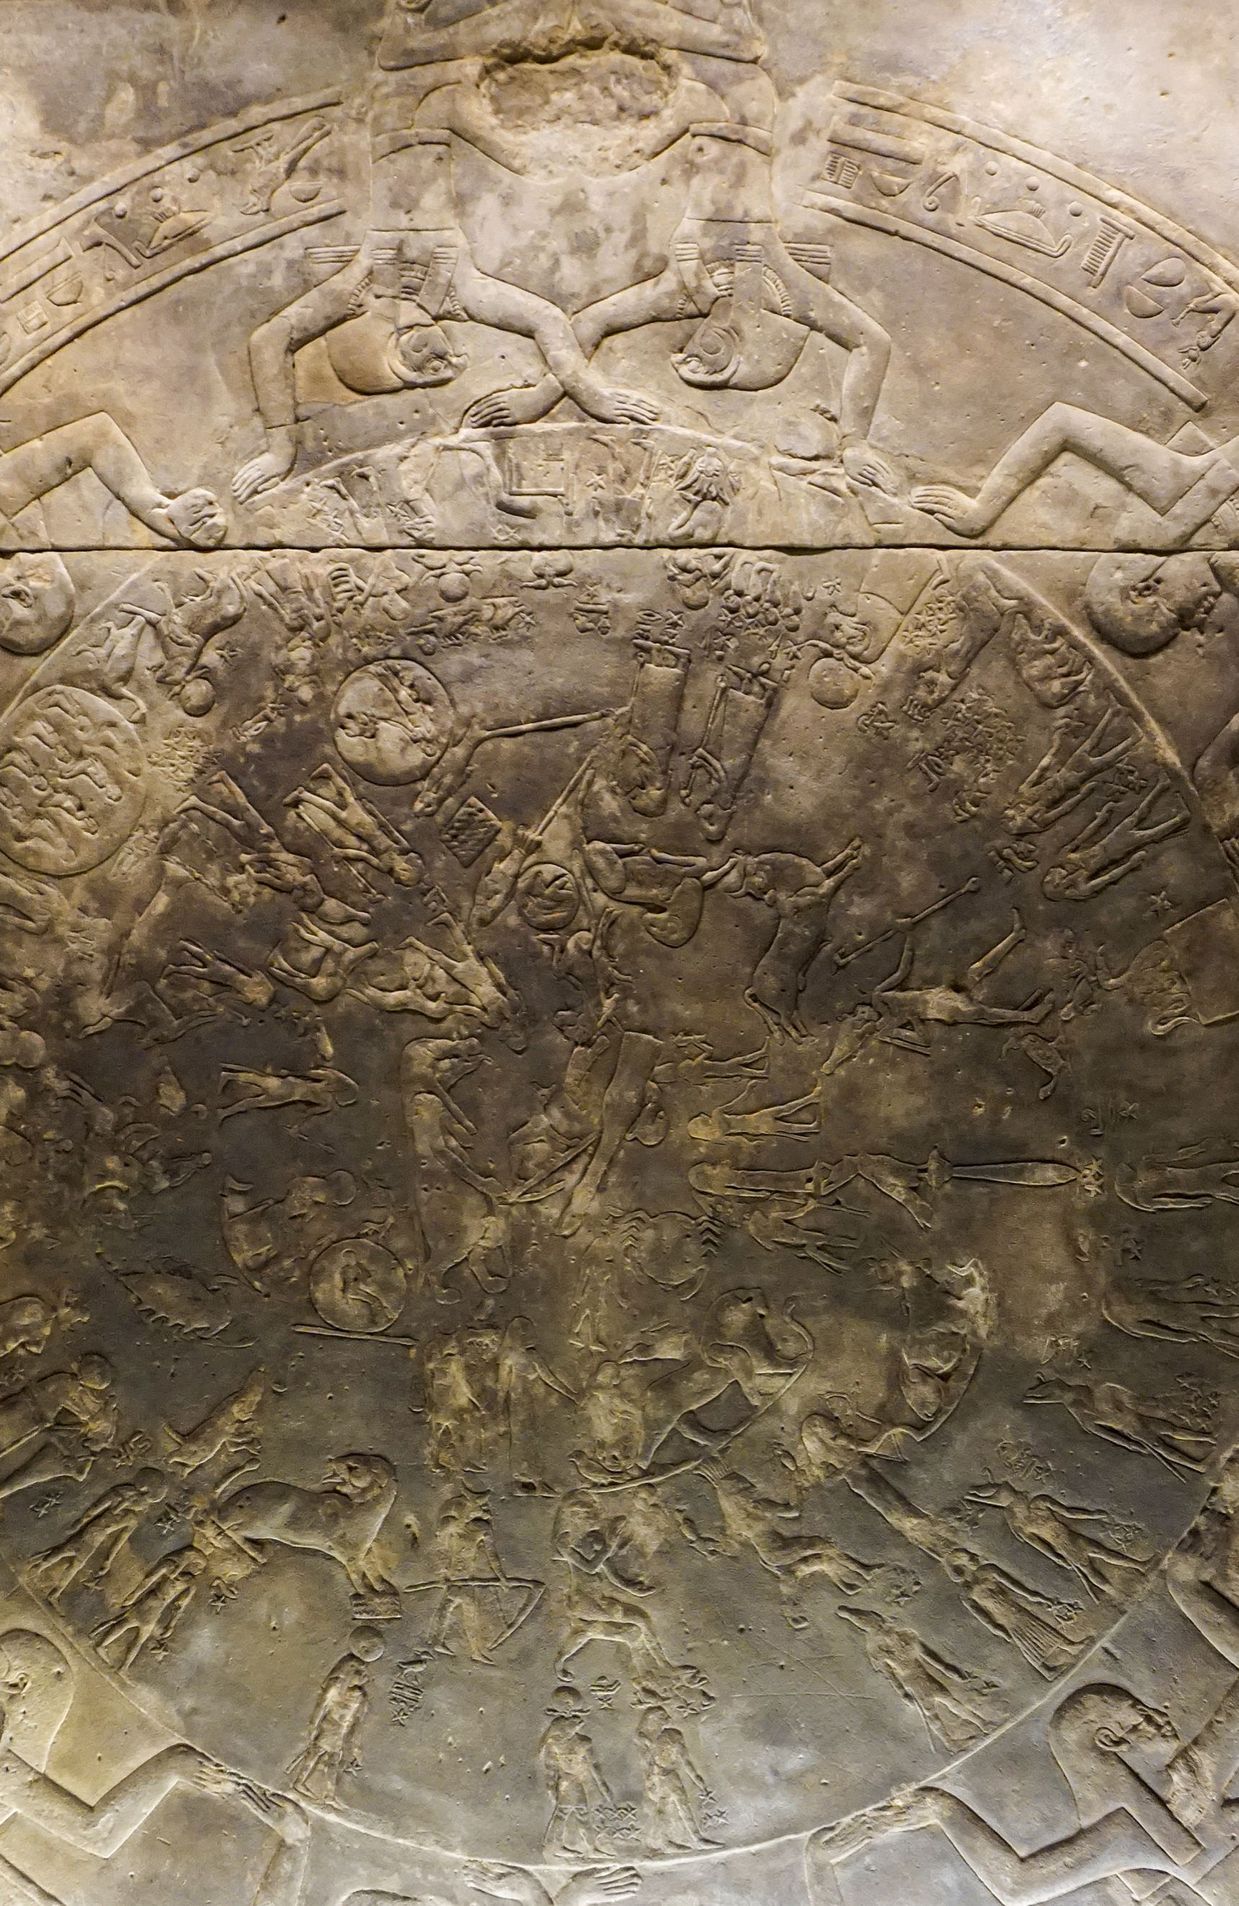 Le Zodiaque de Denderah, exposé au Louvre, est aussi réclamé par Zahi Hawass